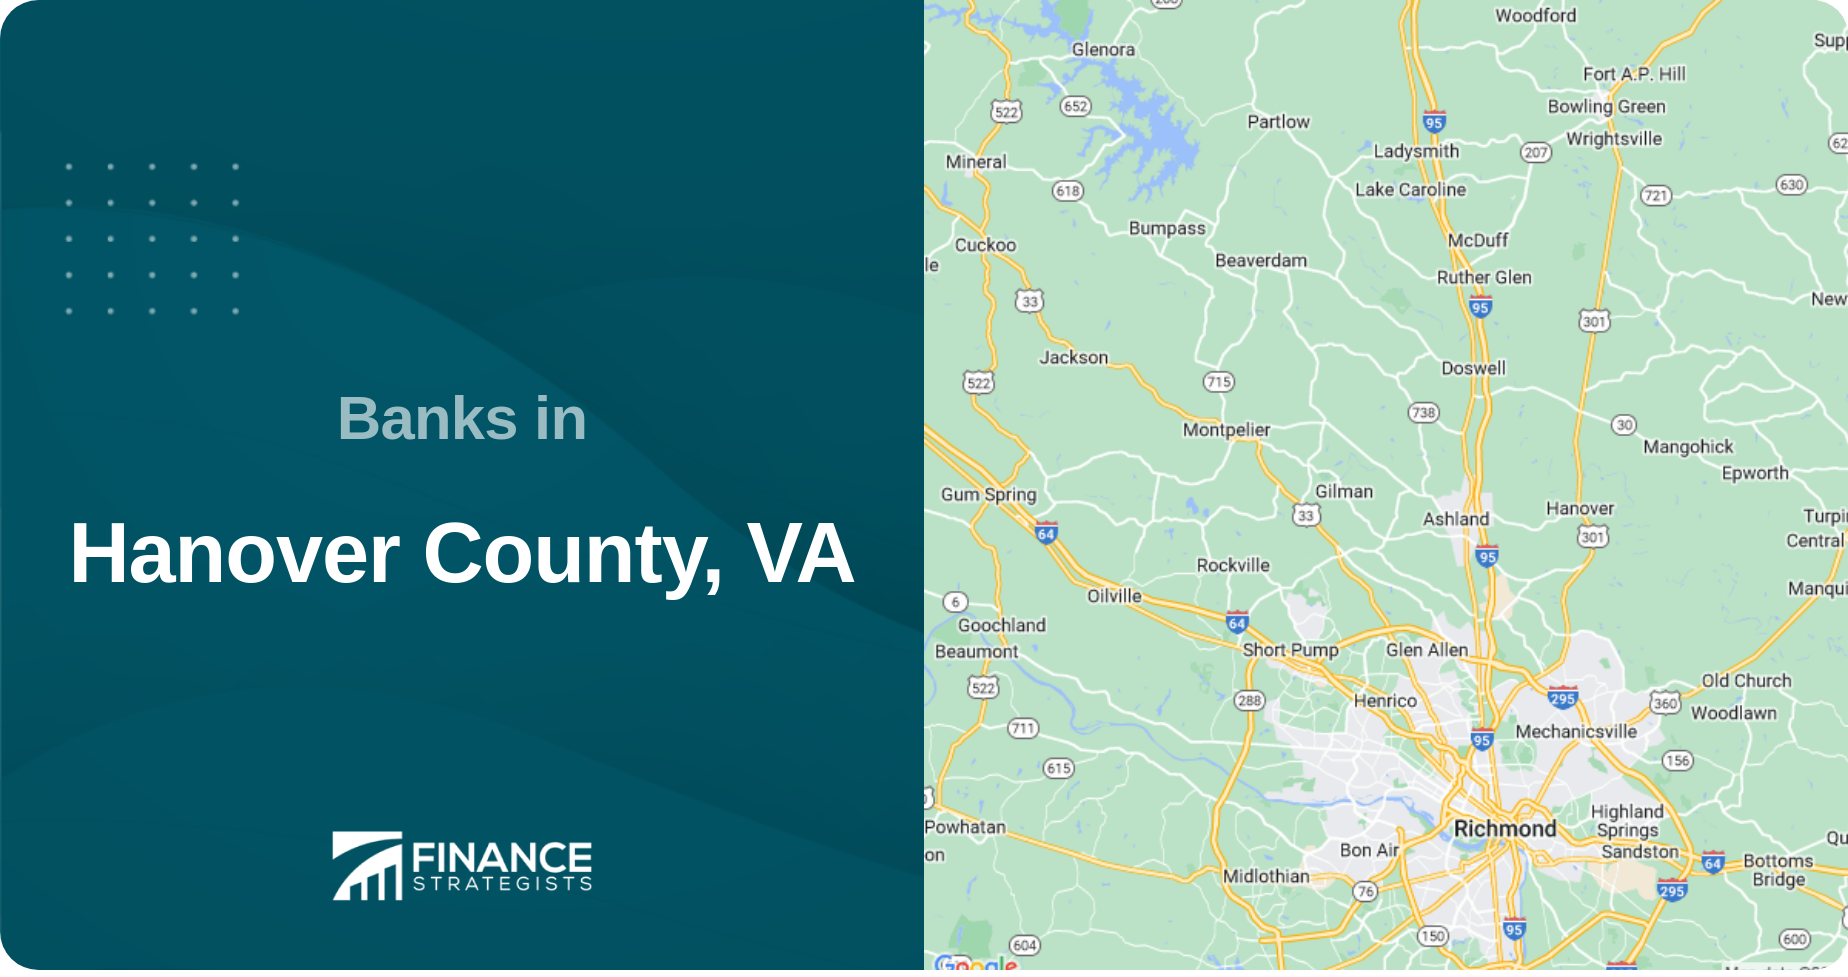 Banks in Hanover County, VA